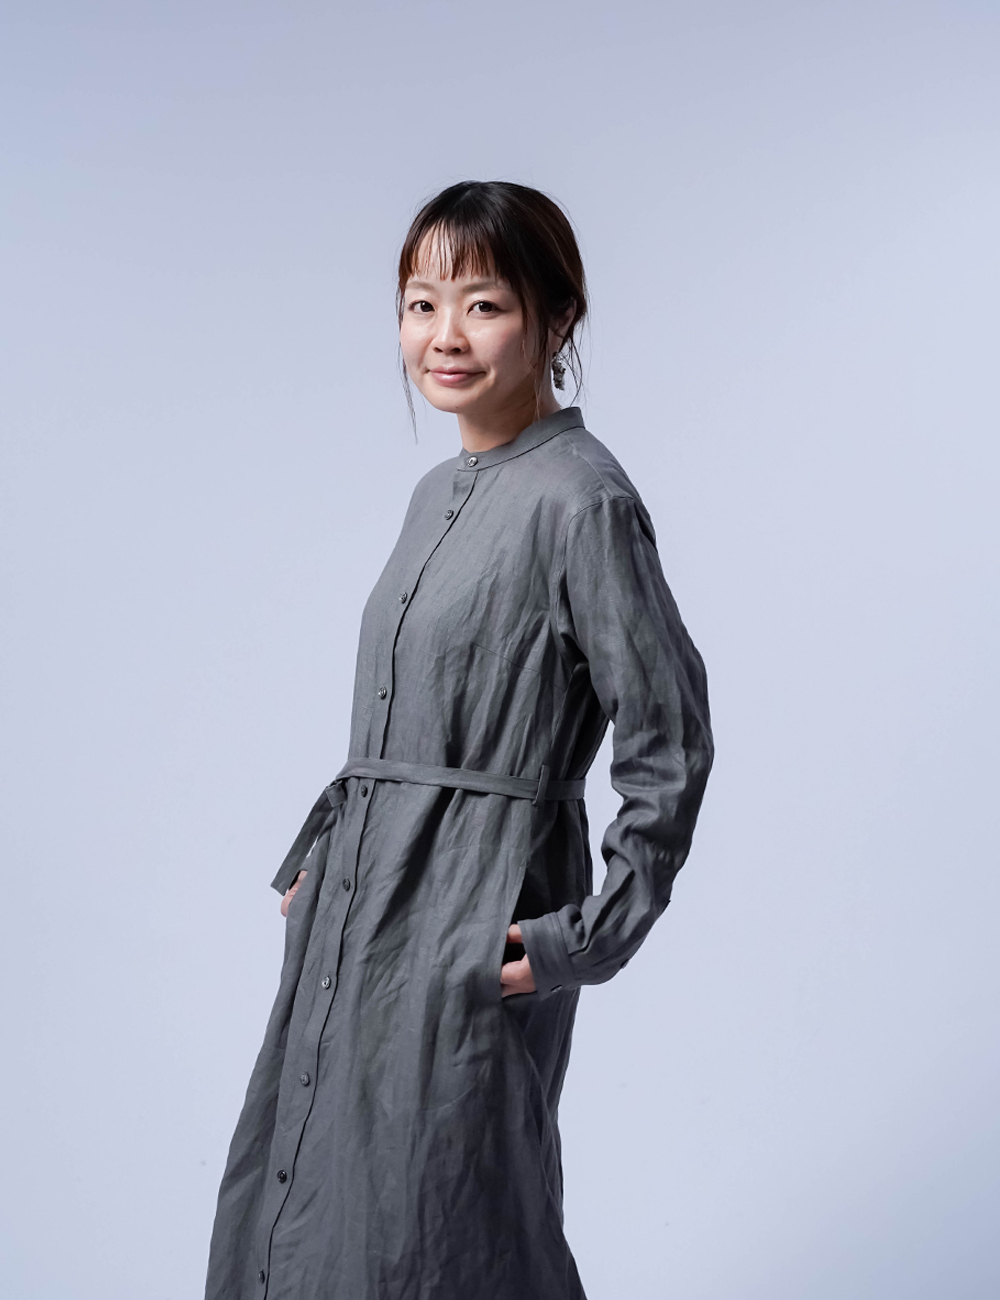 【LINE企画】Linen Dress すっきりシャツテール ワンピース / 鈍色(にびいろ) a015c-nib1